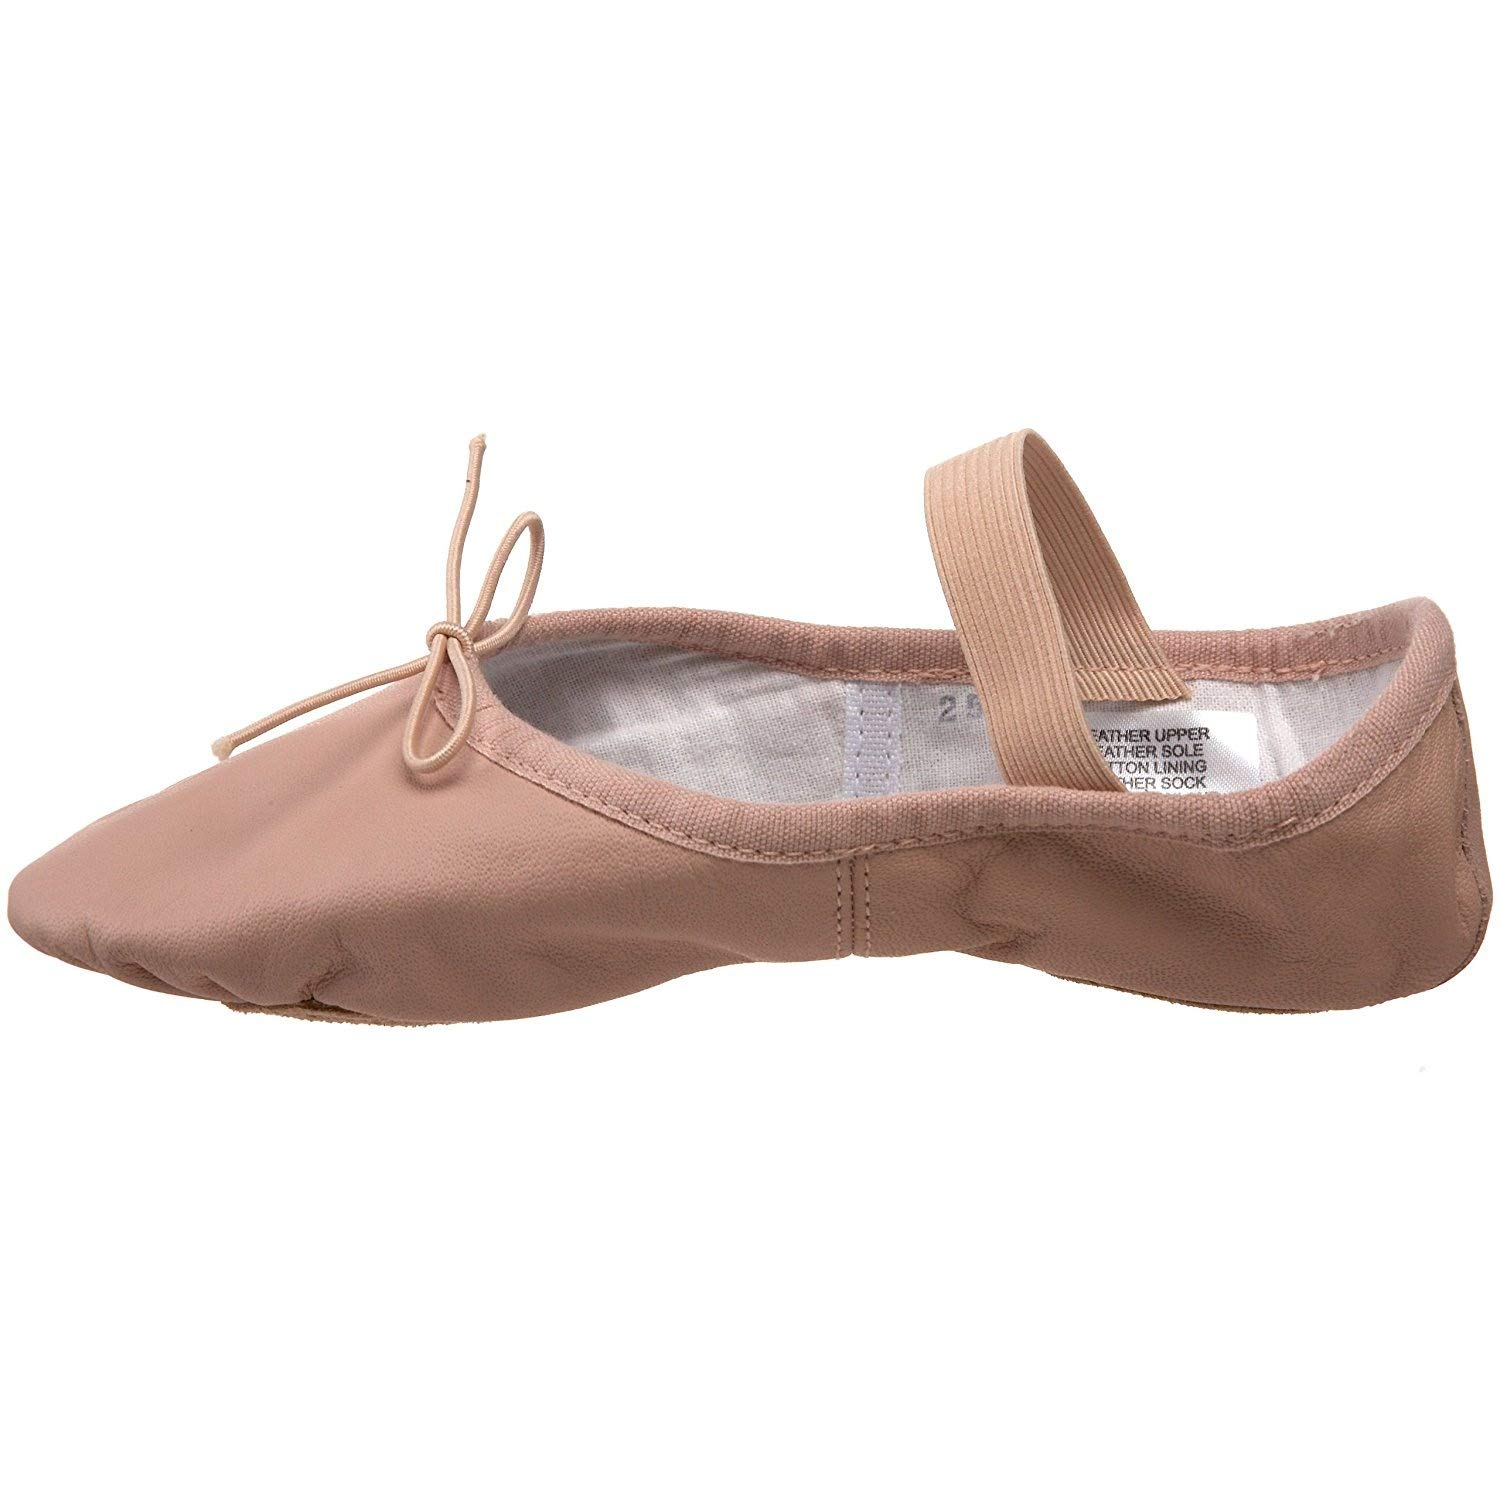 Bloch girls Bloch Dance Girl's Dansoft Ii Leather Split Sole Ballet Shoe/Slipper